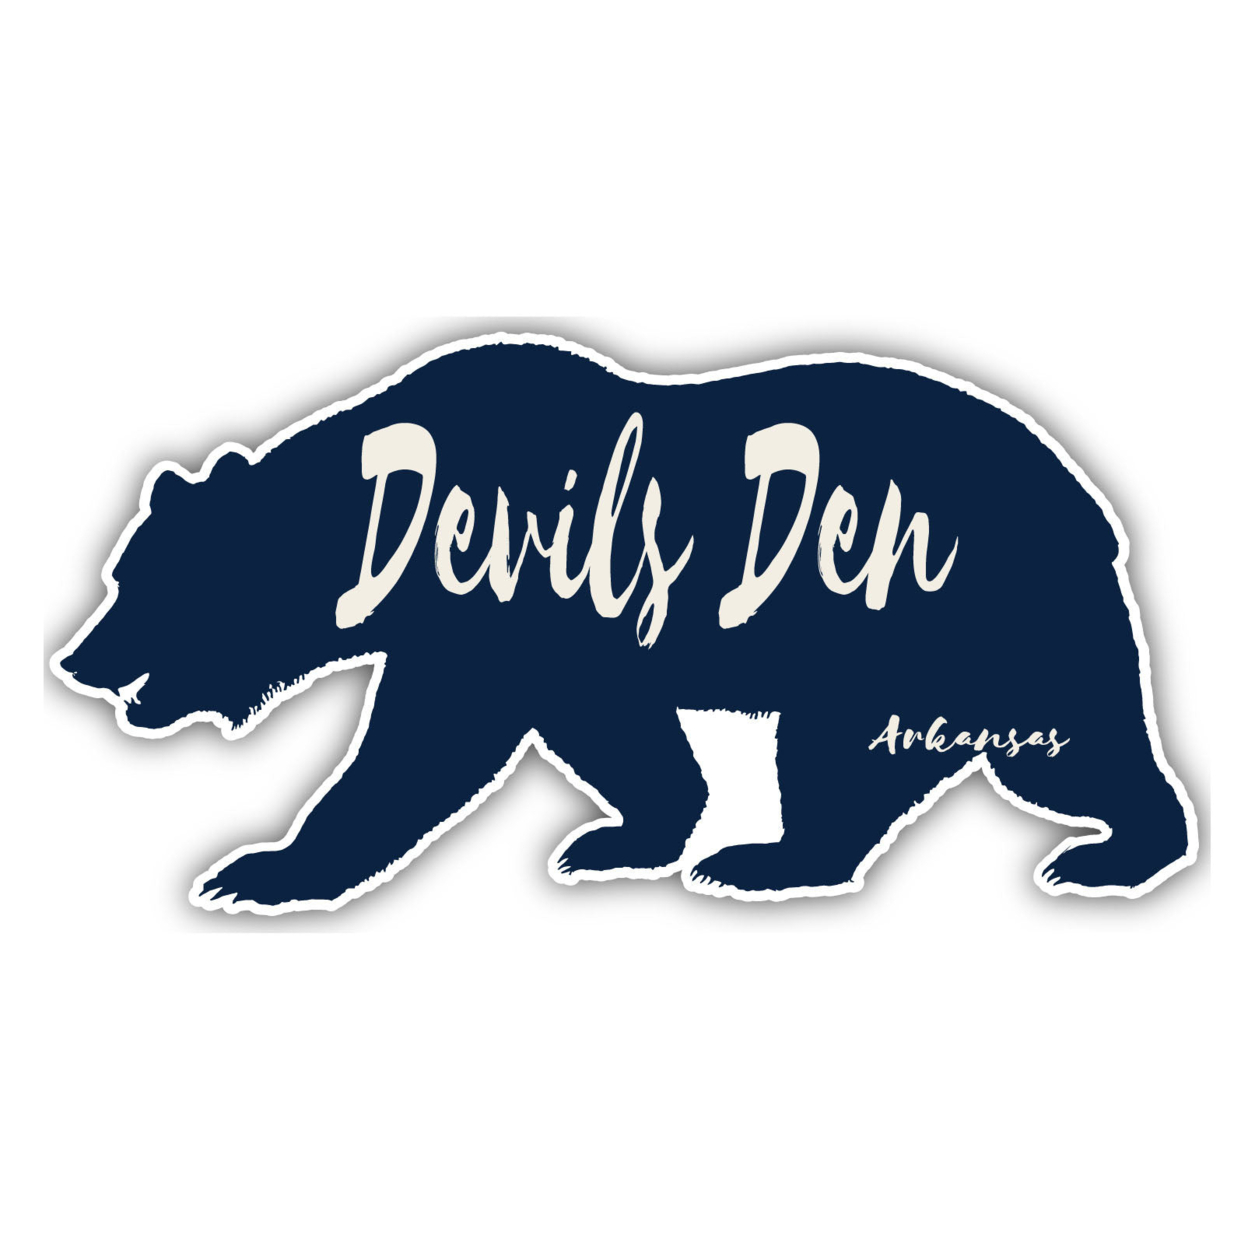 Devils Den Arkansas Souvenir Decorative Stickers (Choose Theme And Size) - Single Unit, 4-Inch, Bear